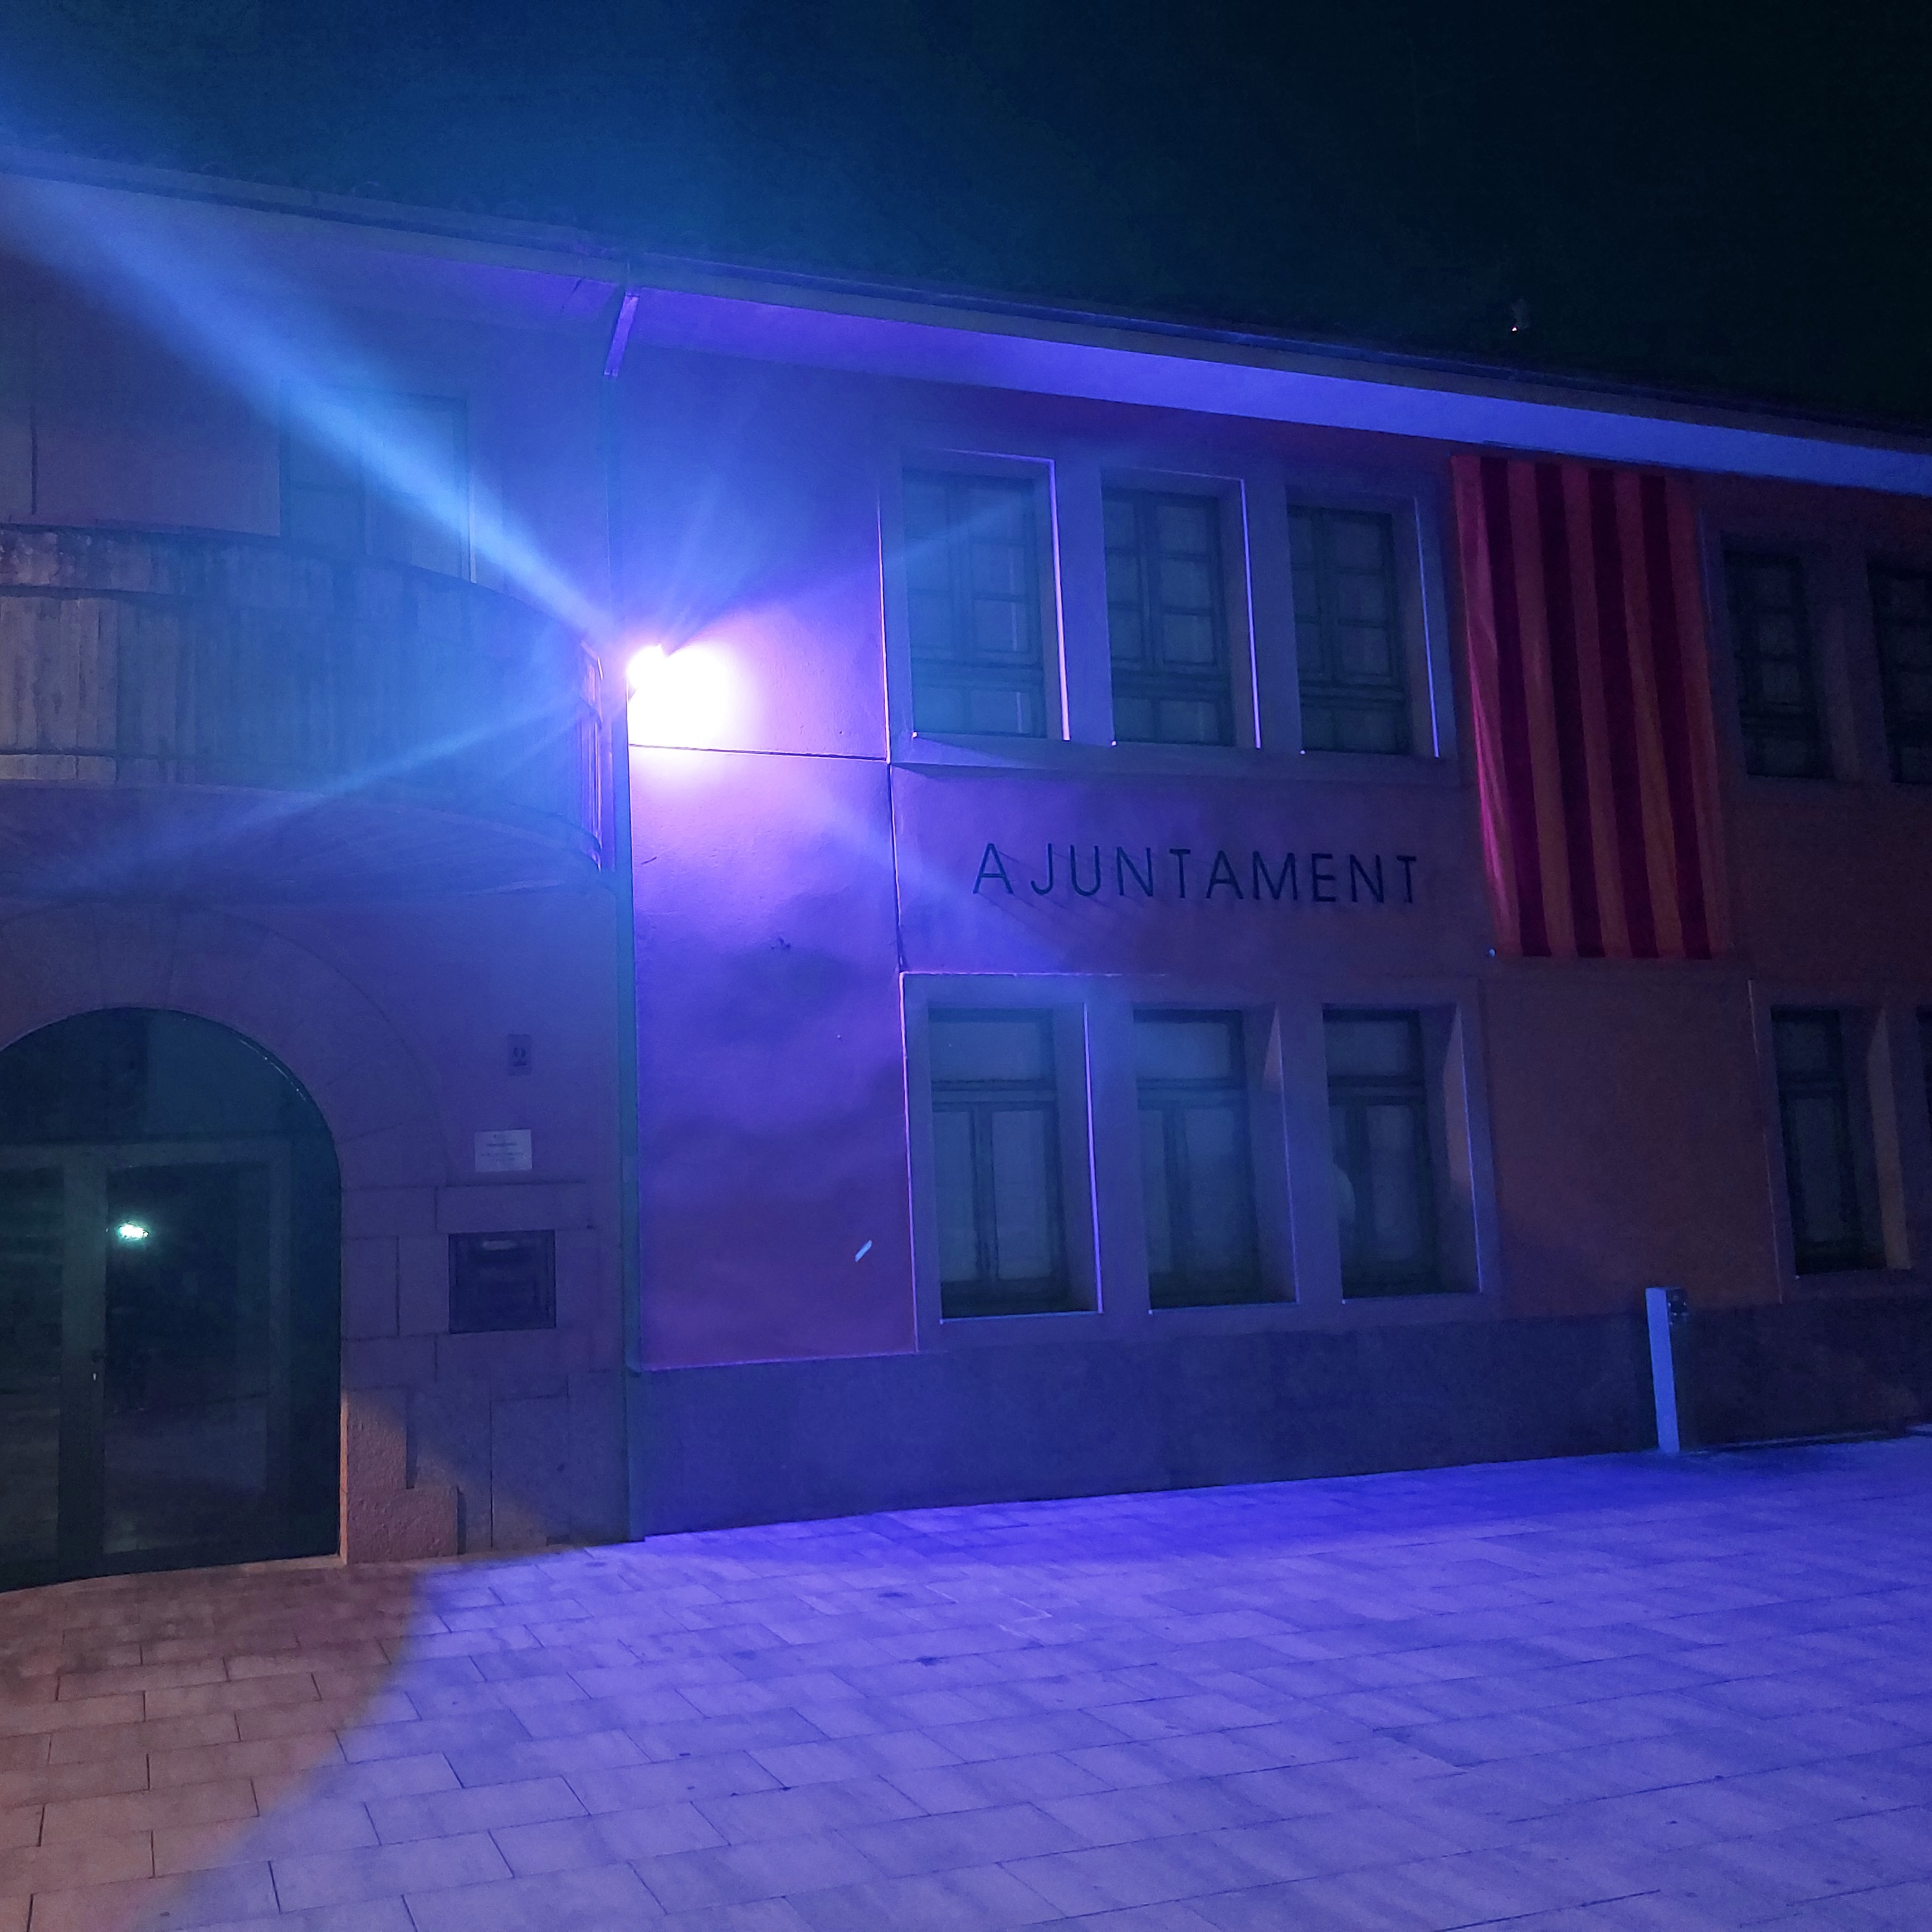 Aquest vespre, la façana de l'Ajuntament de Quart s'il·luminade blau per la fibromialgia